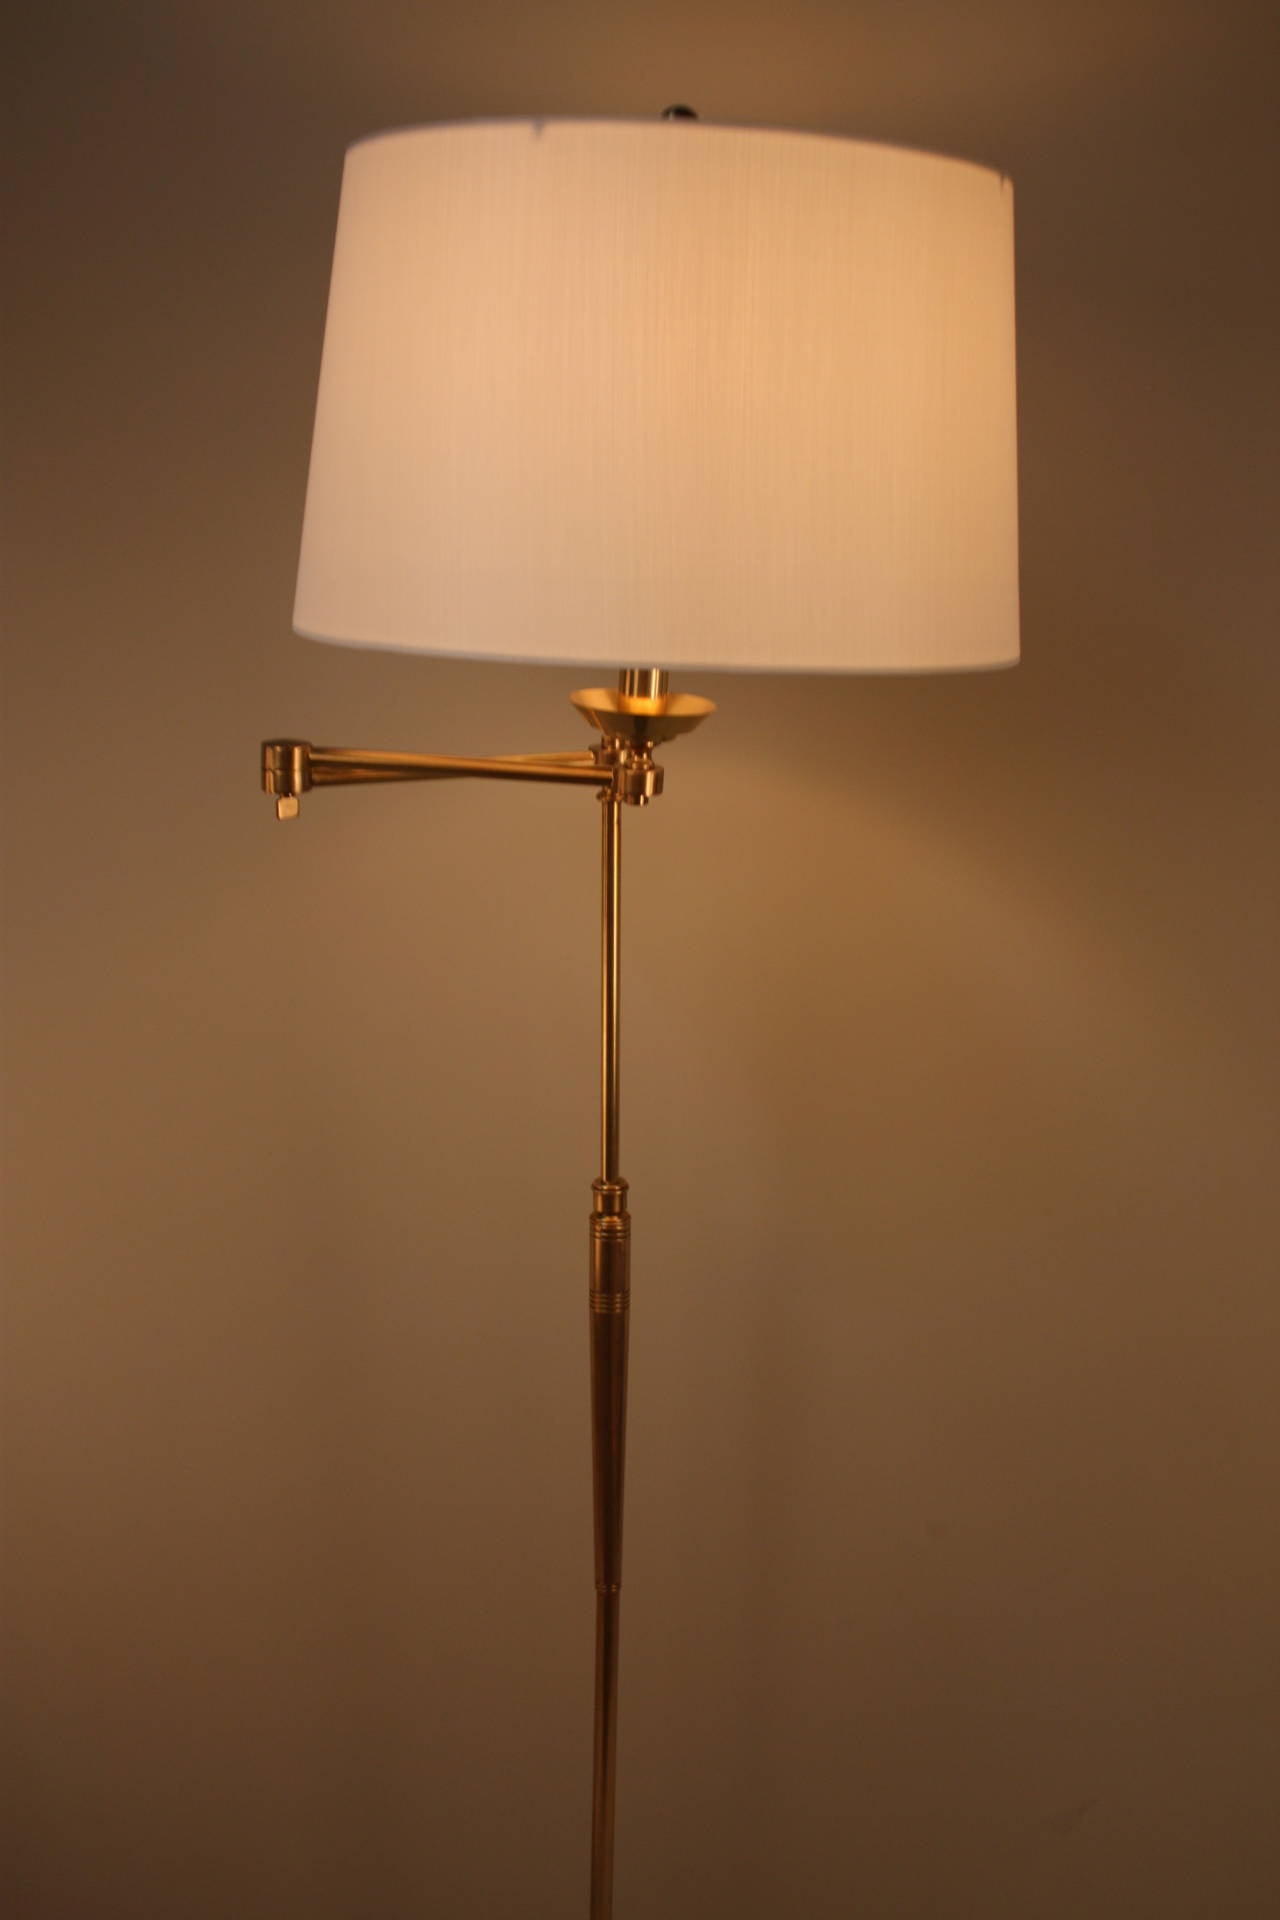 Spectacular Classic design golf club bronze swing arm floor lamp.